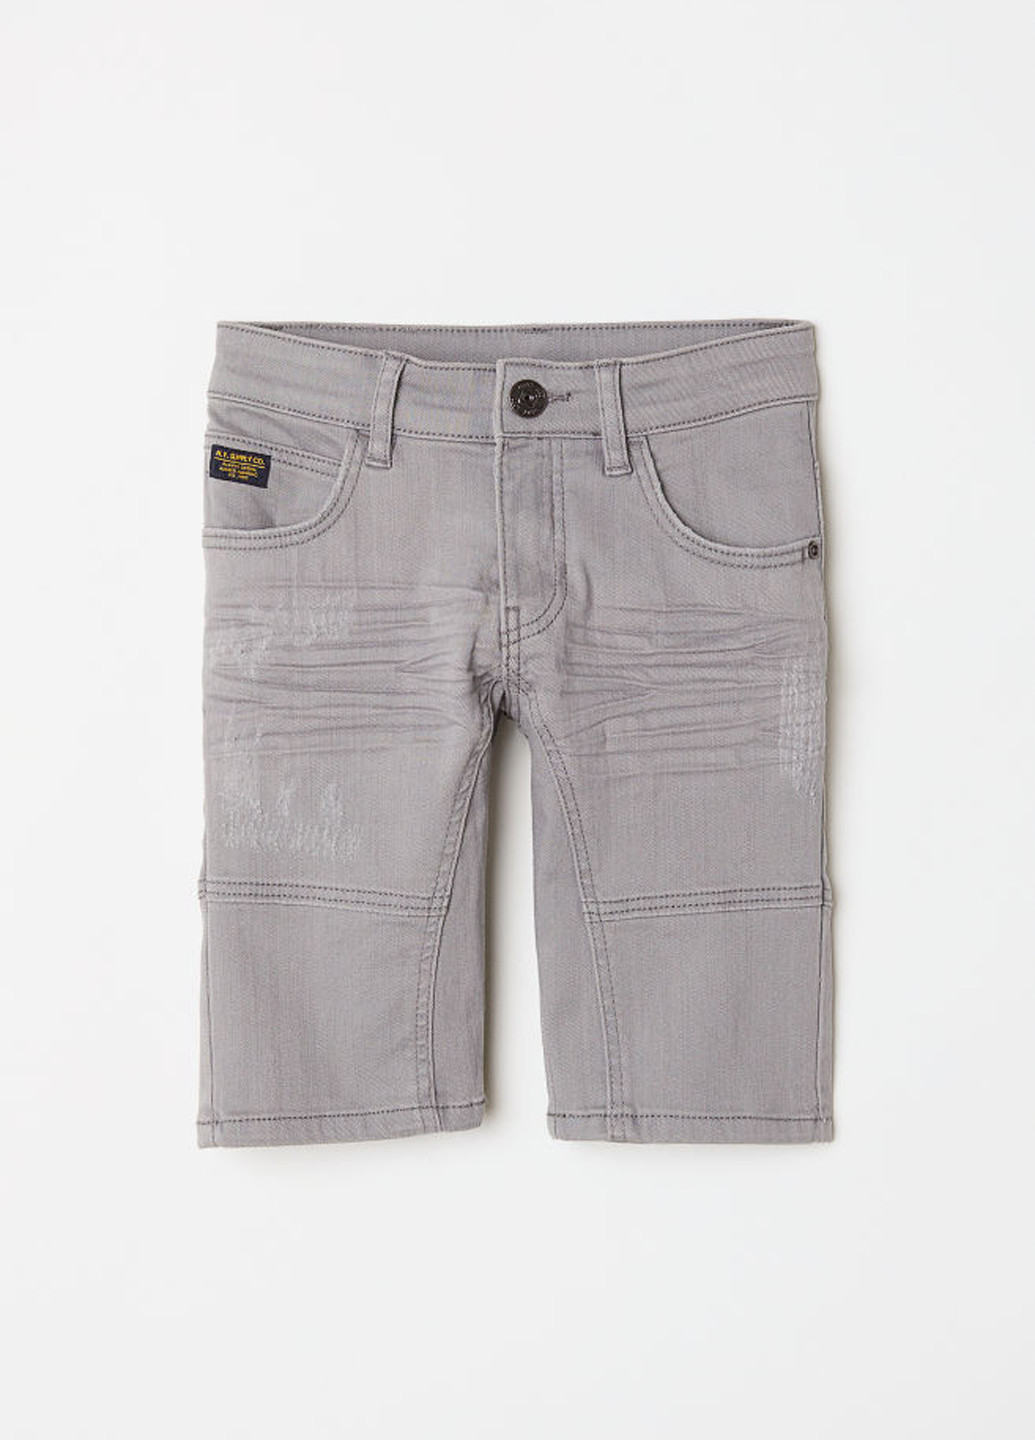 Шорты H&M бермуды однотонные серые джинсовые хлопок